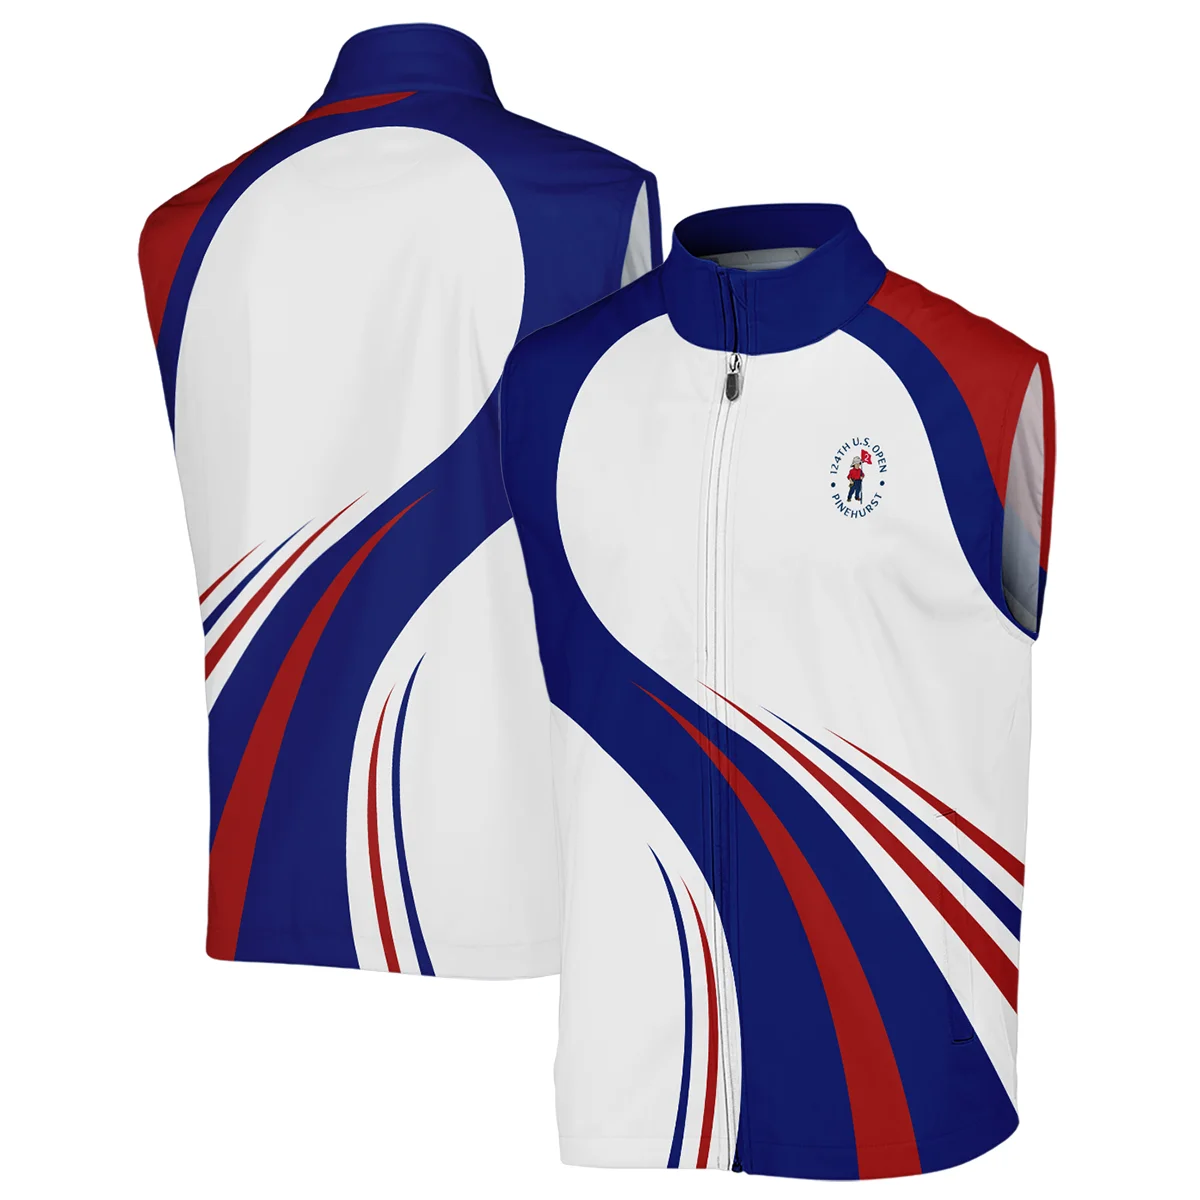 Rolex 124th U.S. Open Pinehurst Golf Blue Red White Background Sleeveless Jacket Style Classic Sleeveless Jacket